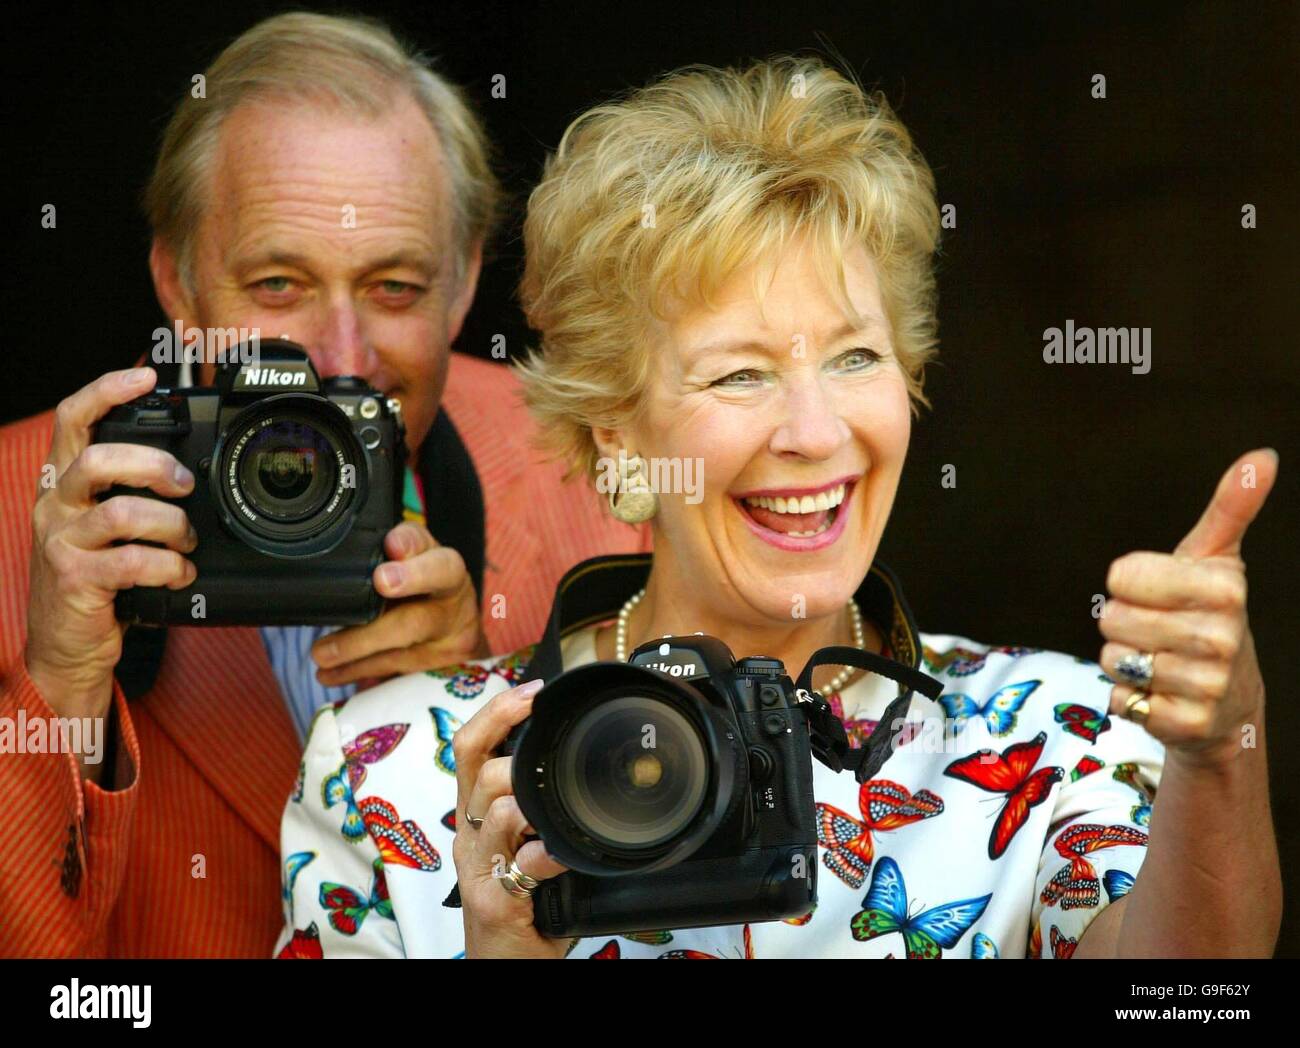 Neil und Christine Hamilton starten Festival Fotowettbewerb Stockfoto